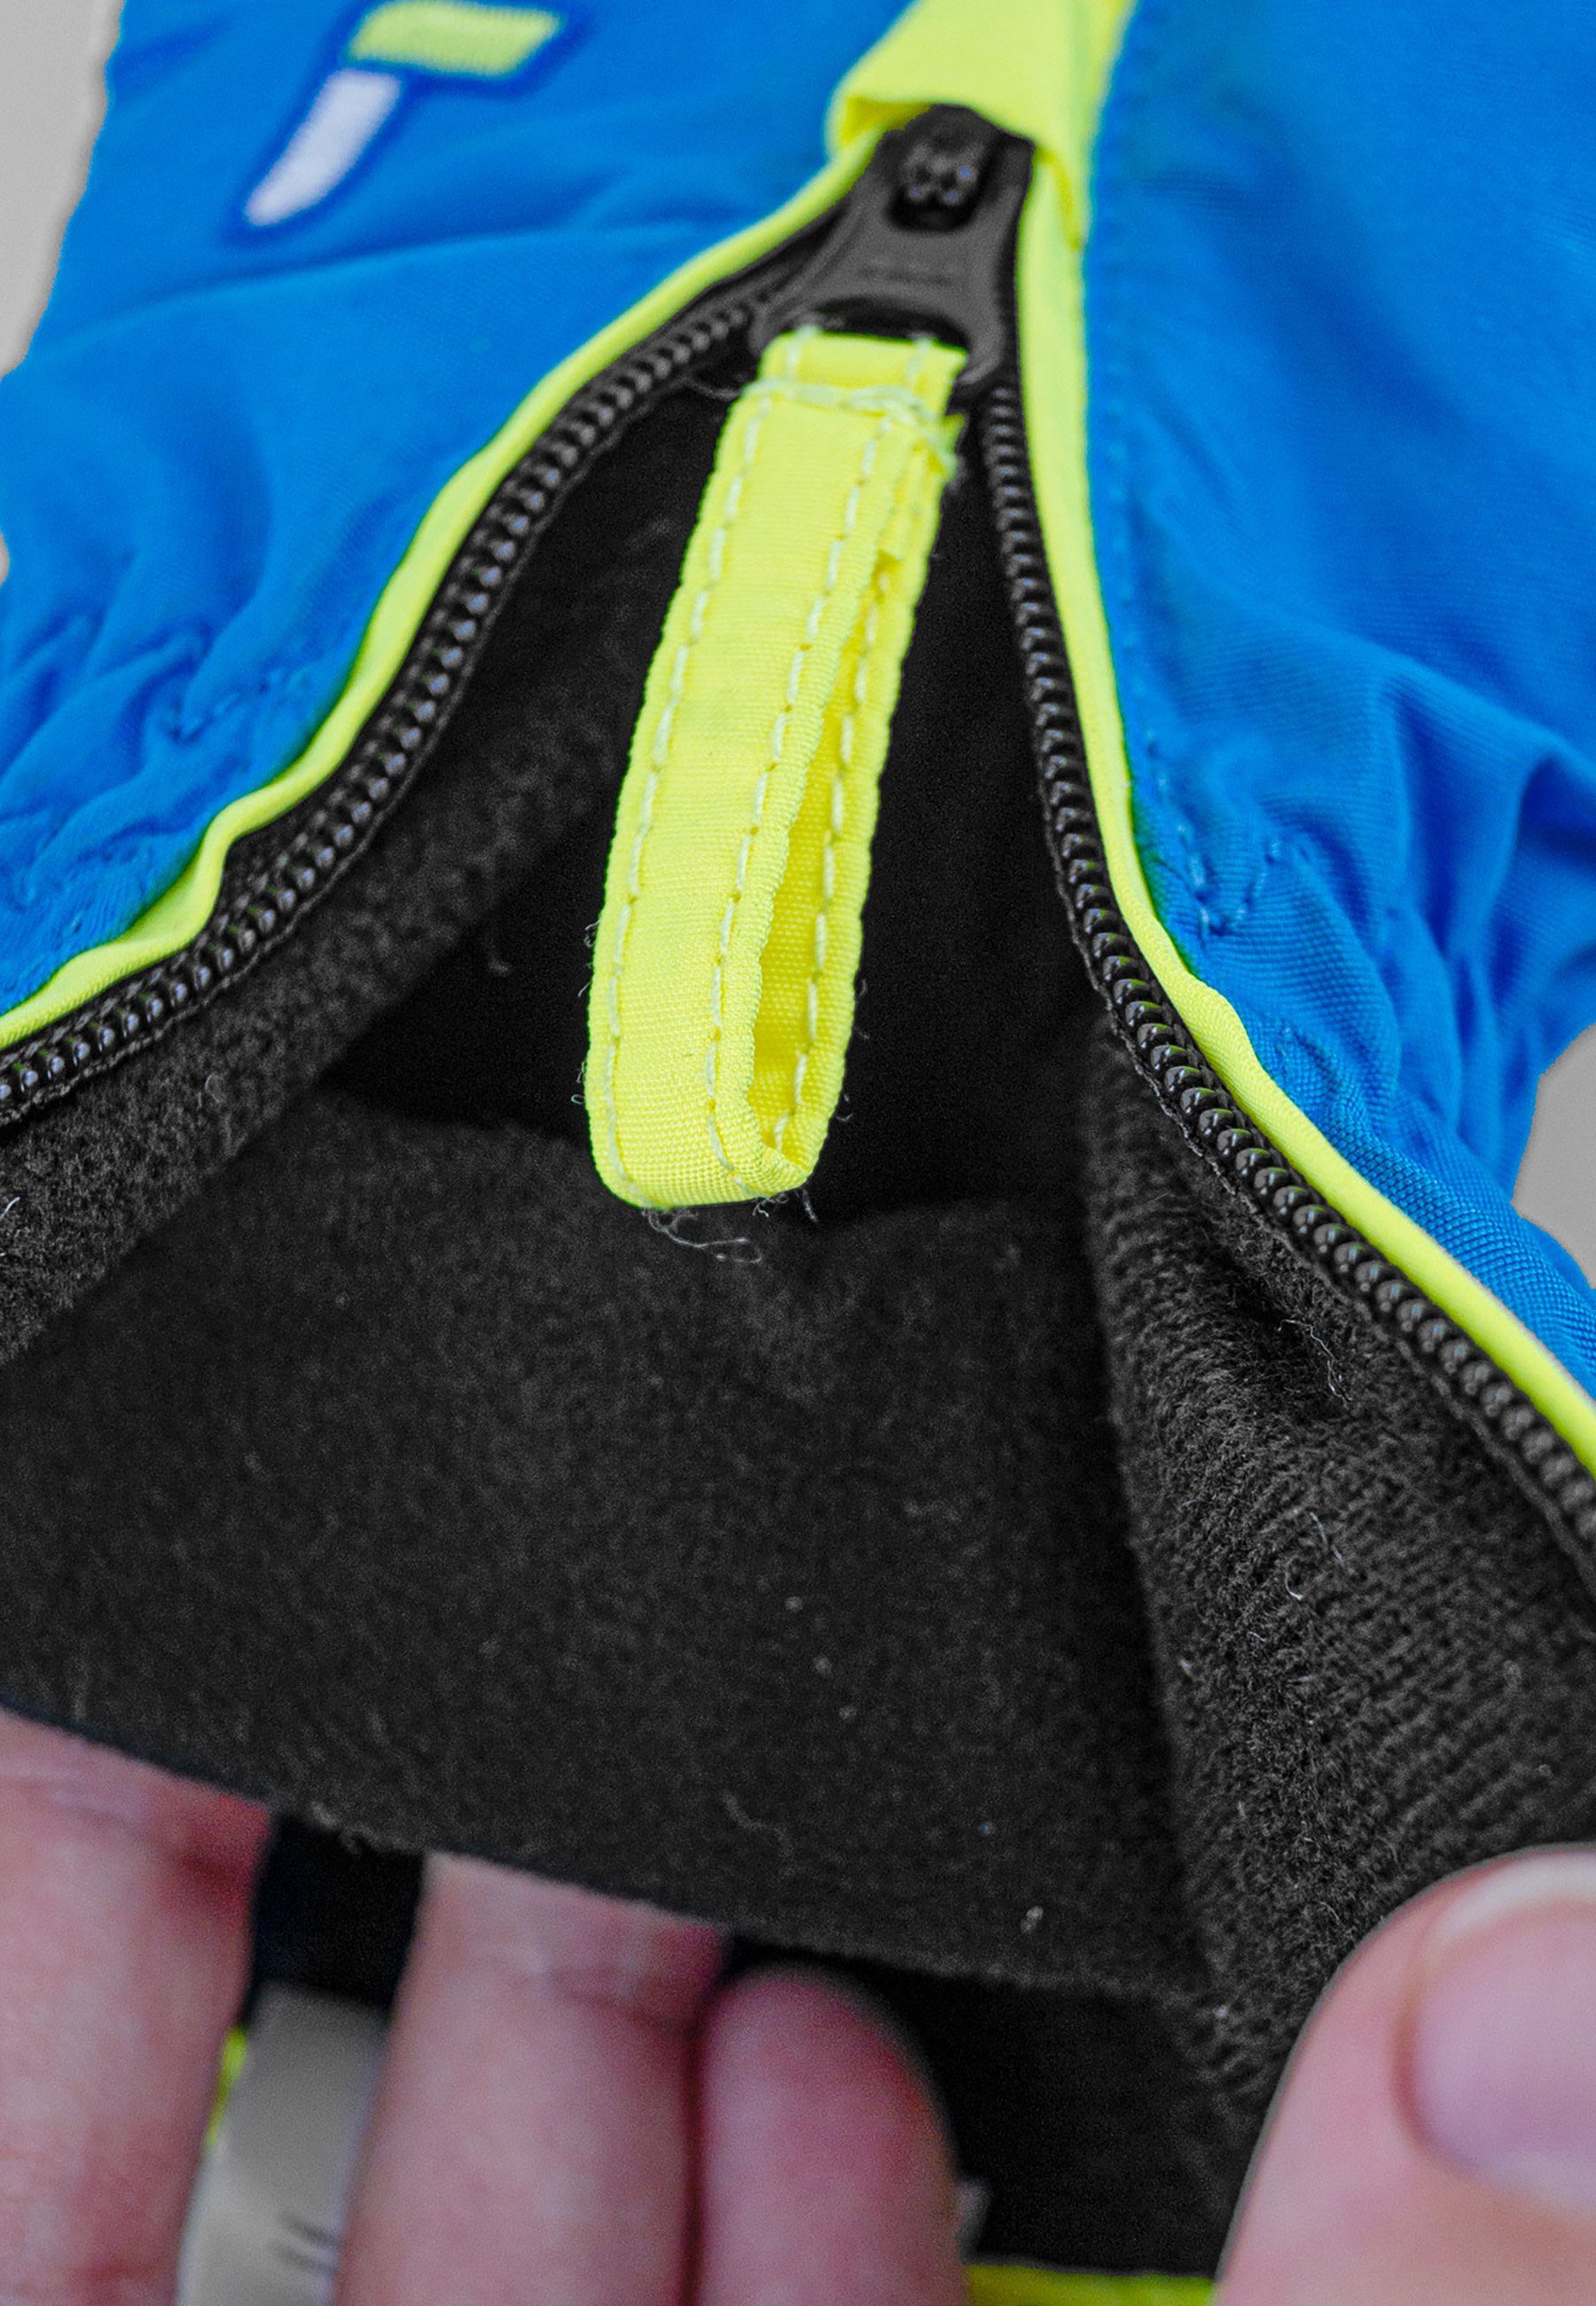 Ben praktischer Reusch gelb-blau Skihandschuhe mit Handgelenkschlaufe